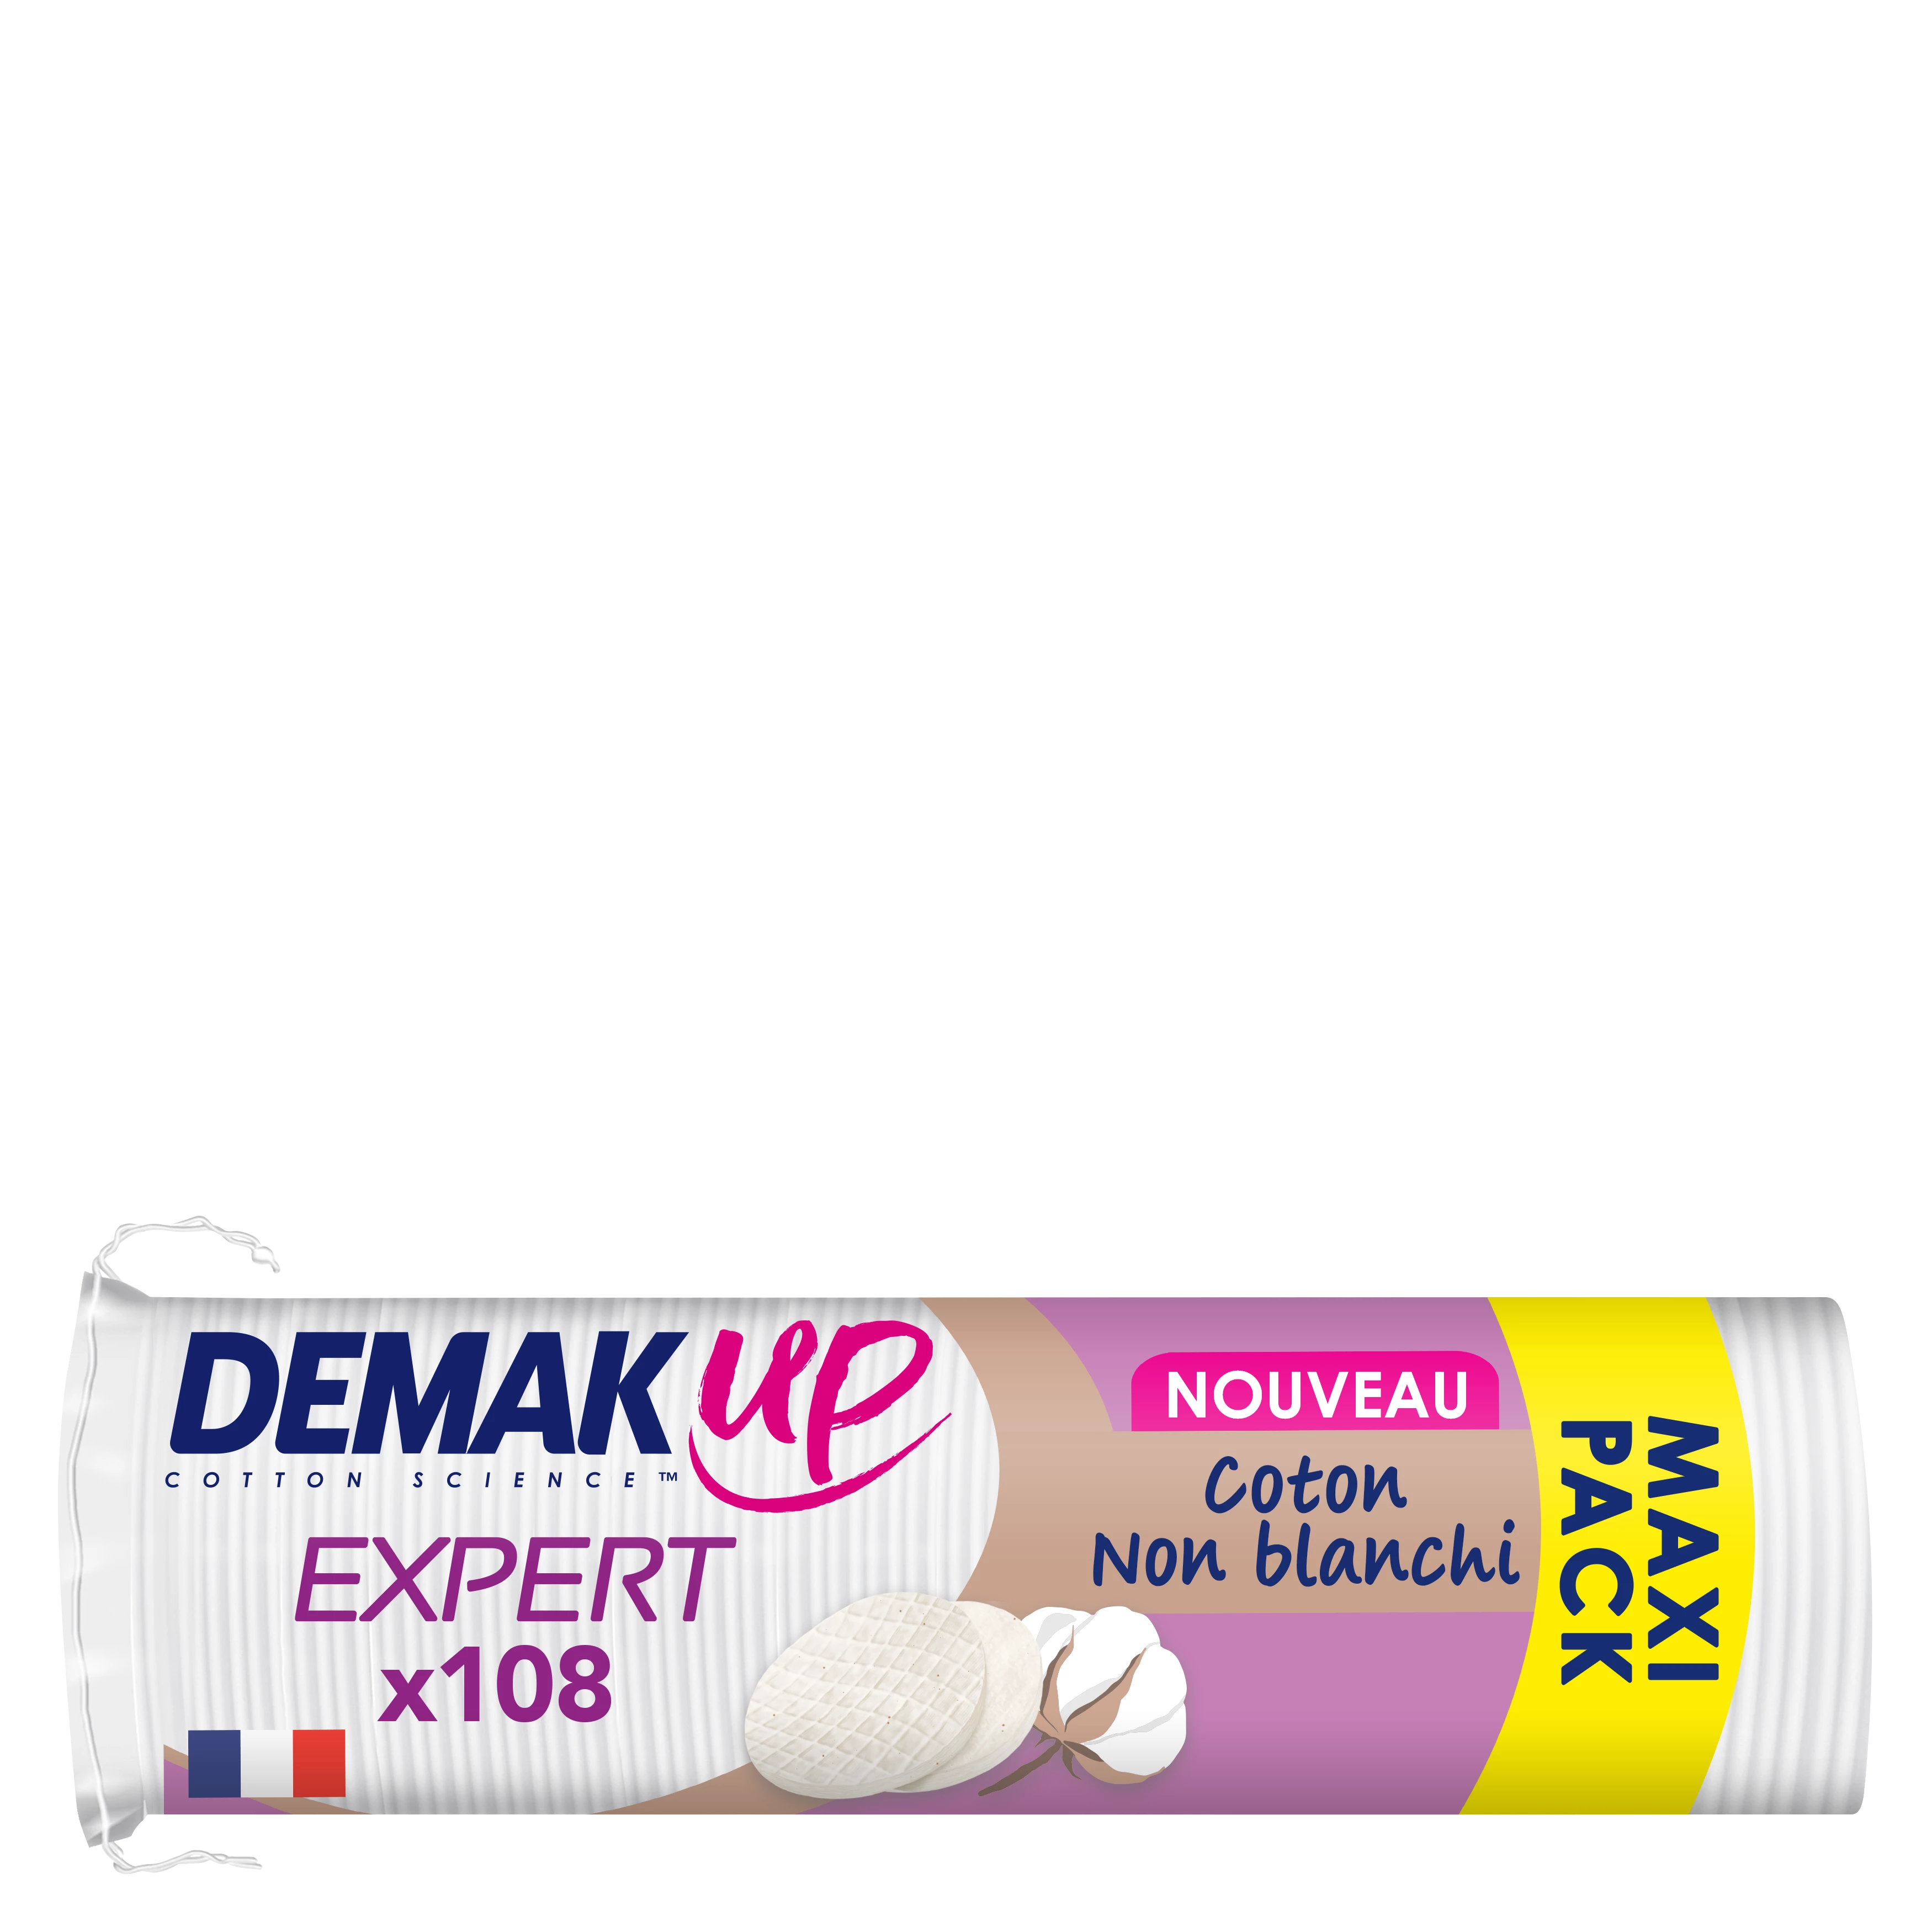 Demakup Expert makeup remover pad X108